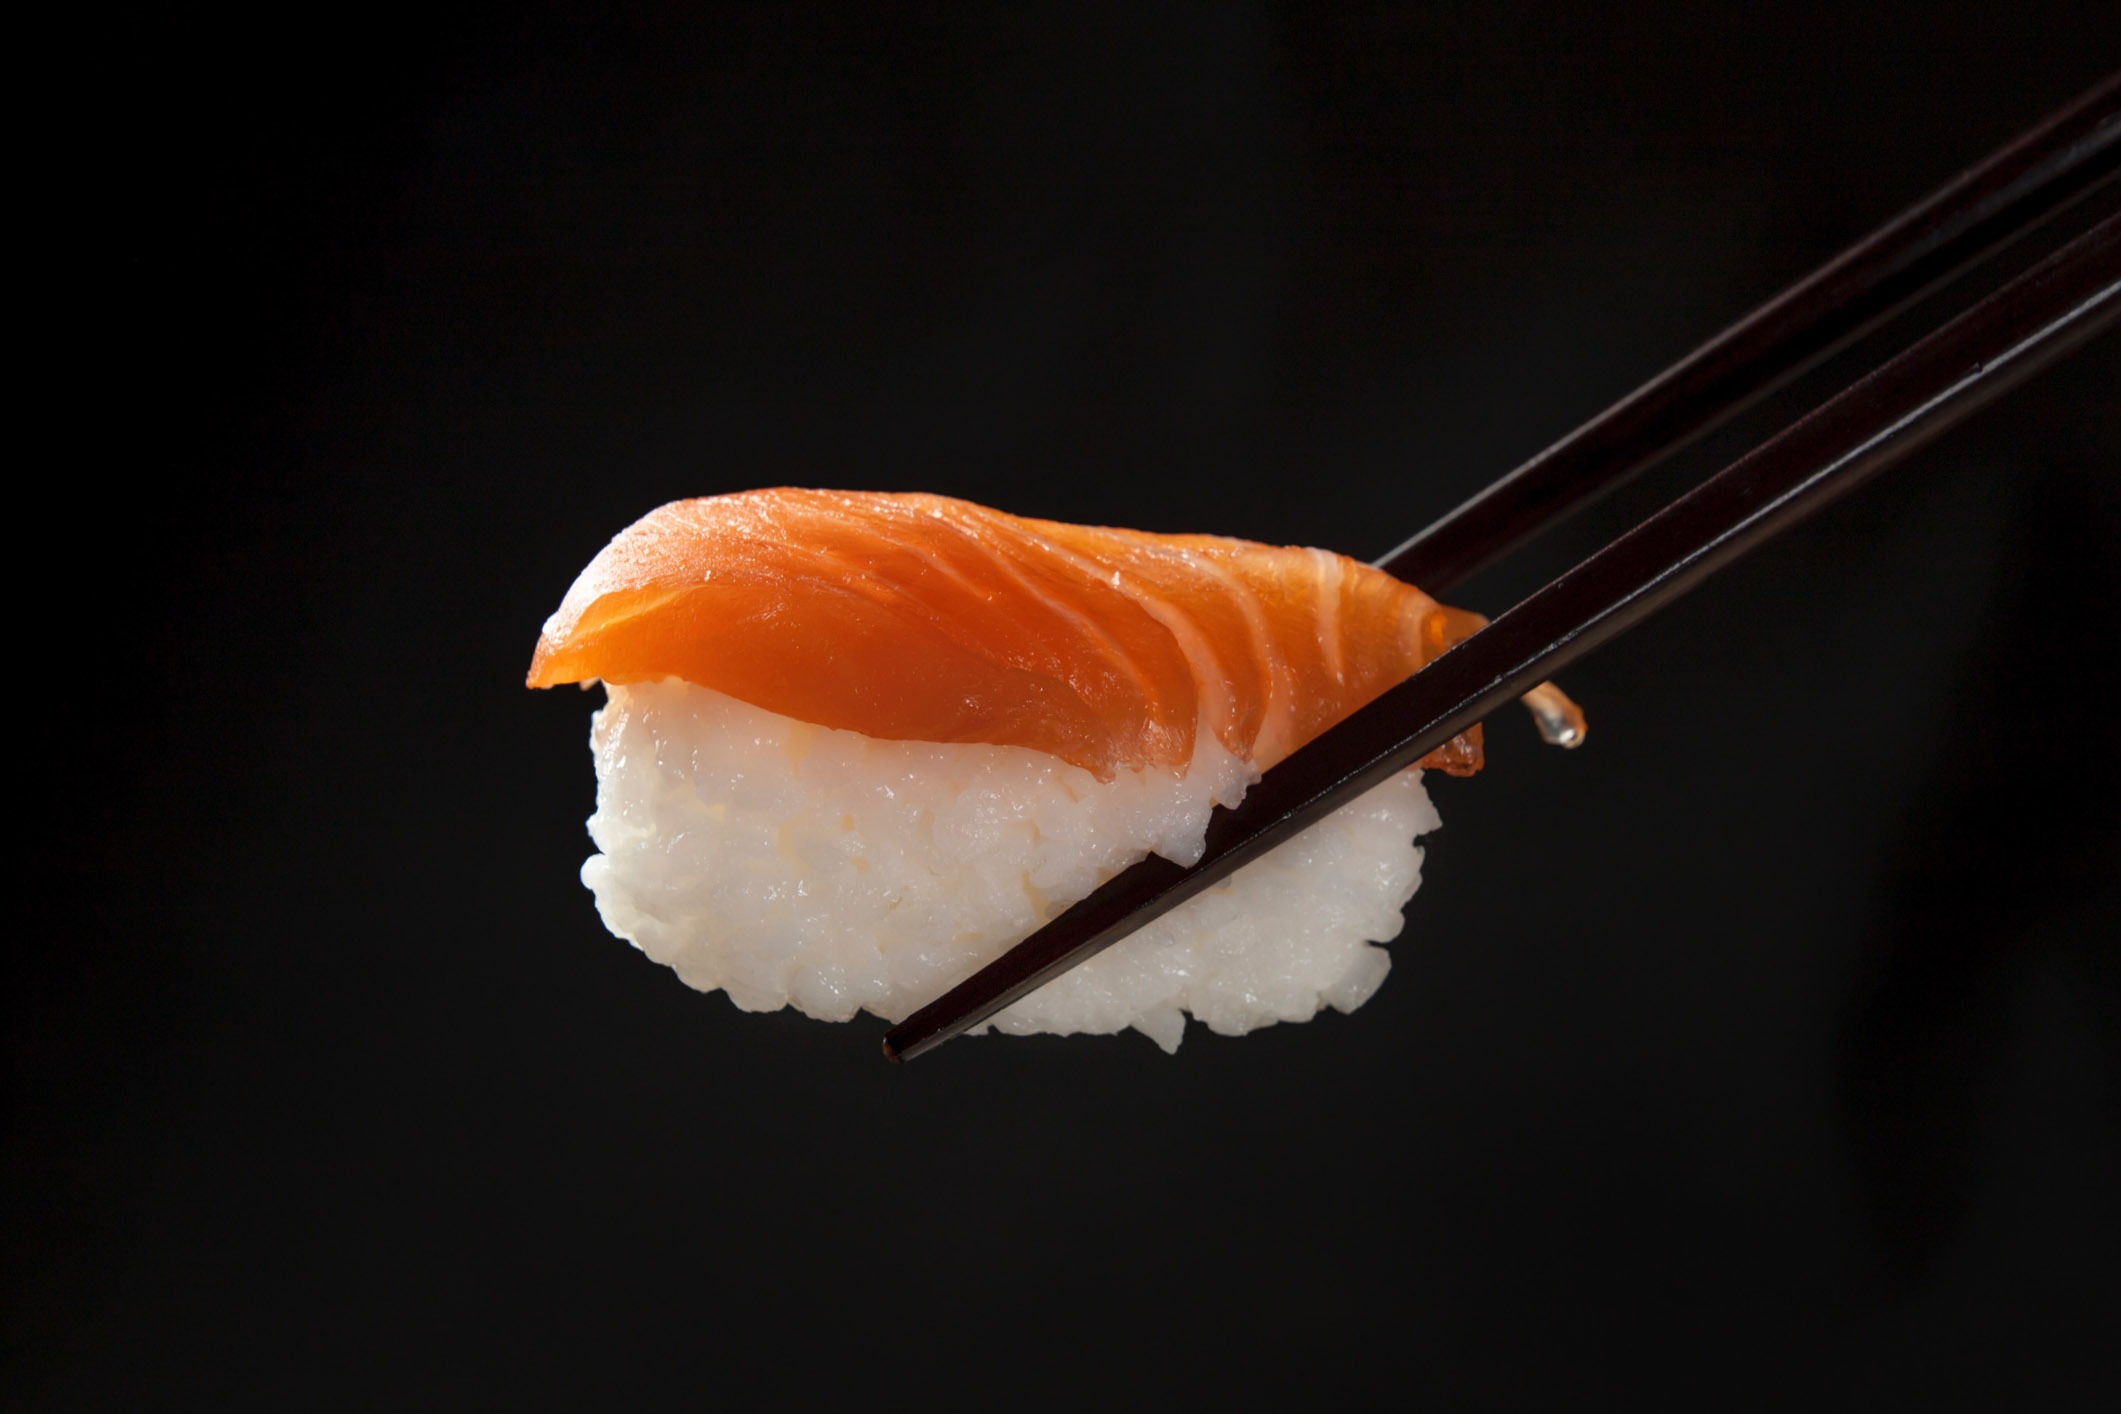 Japanese Dishes #1 - Sushi